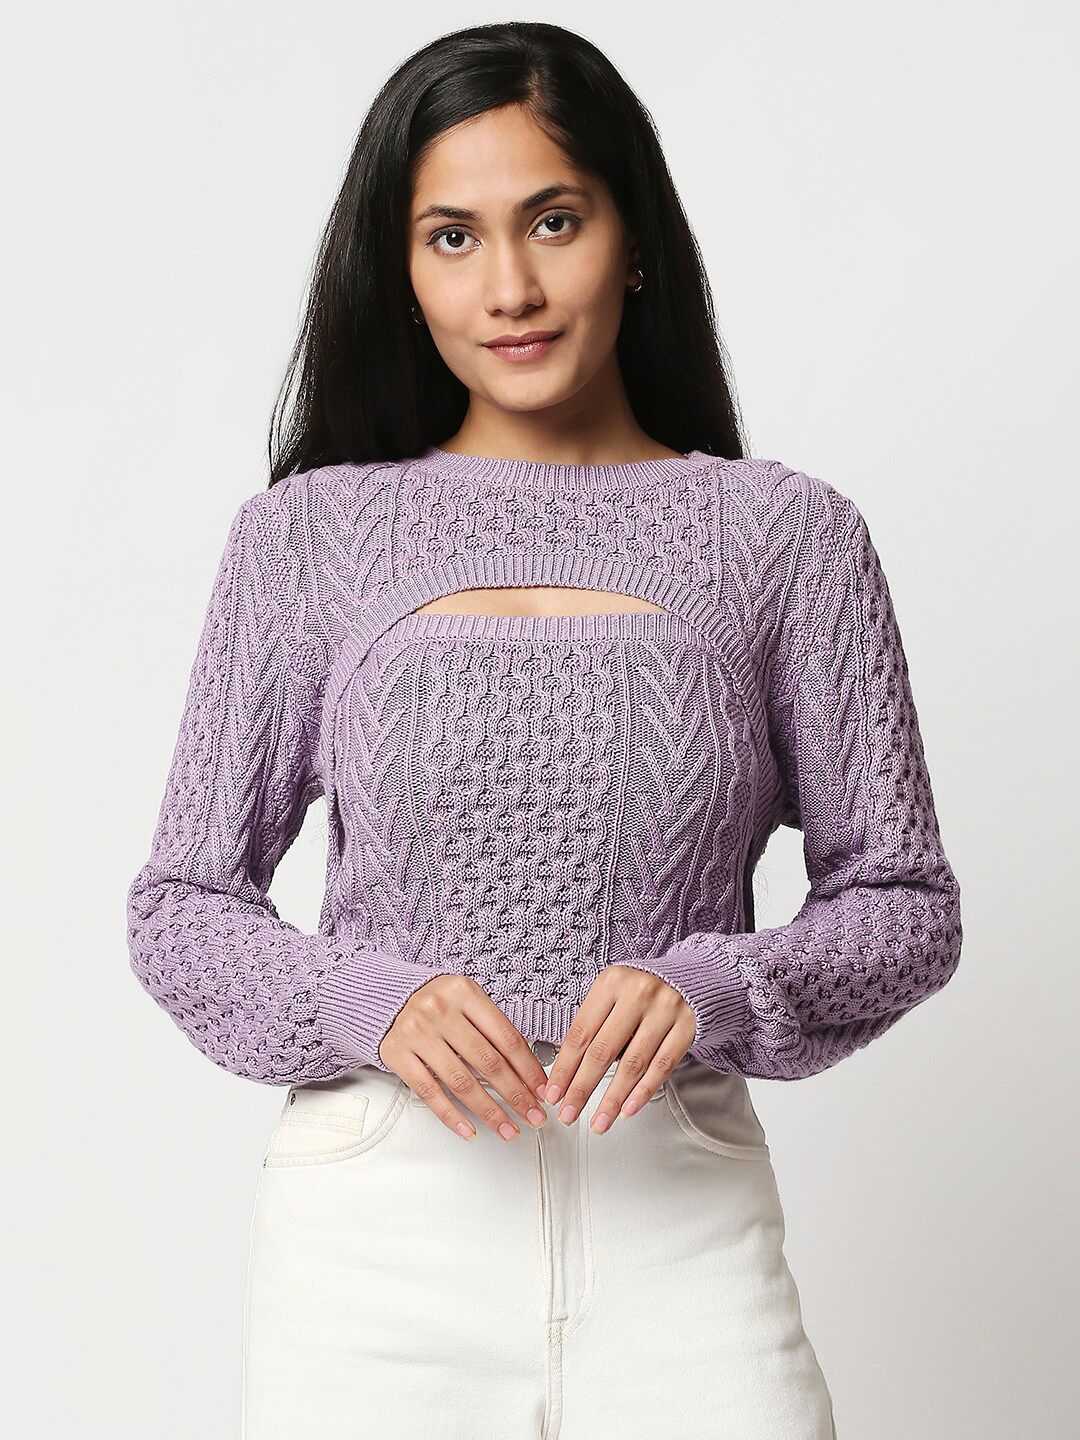 20Dresses Purple Self Design Pure Cotton Top Price in India